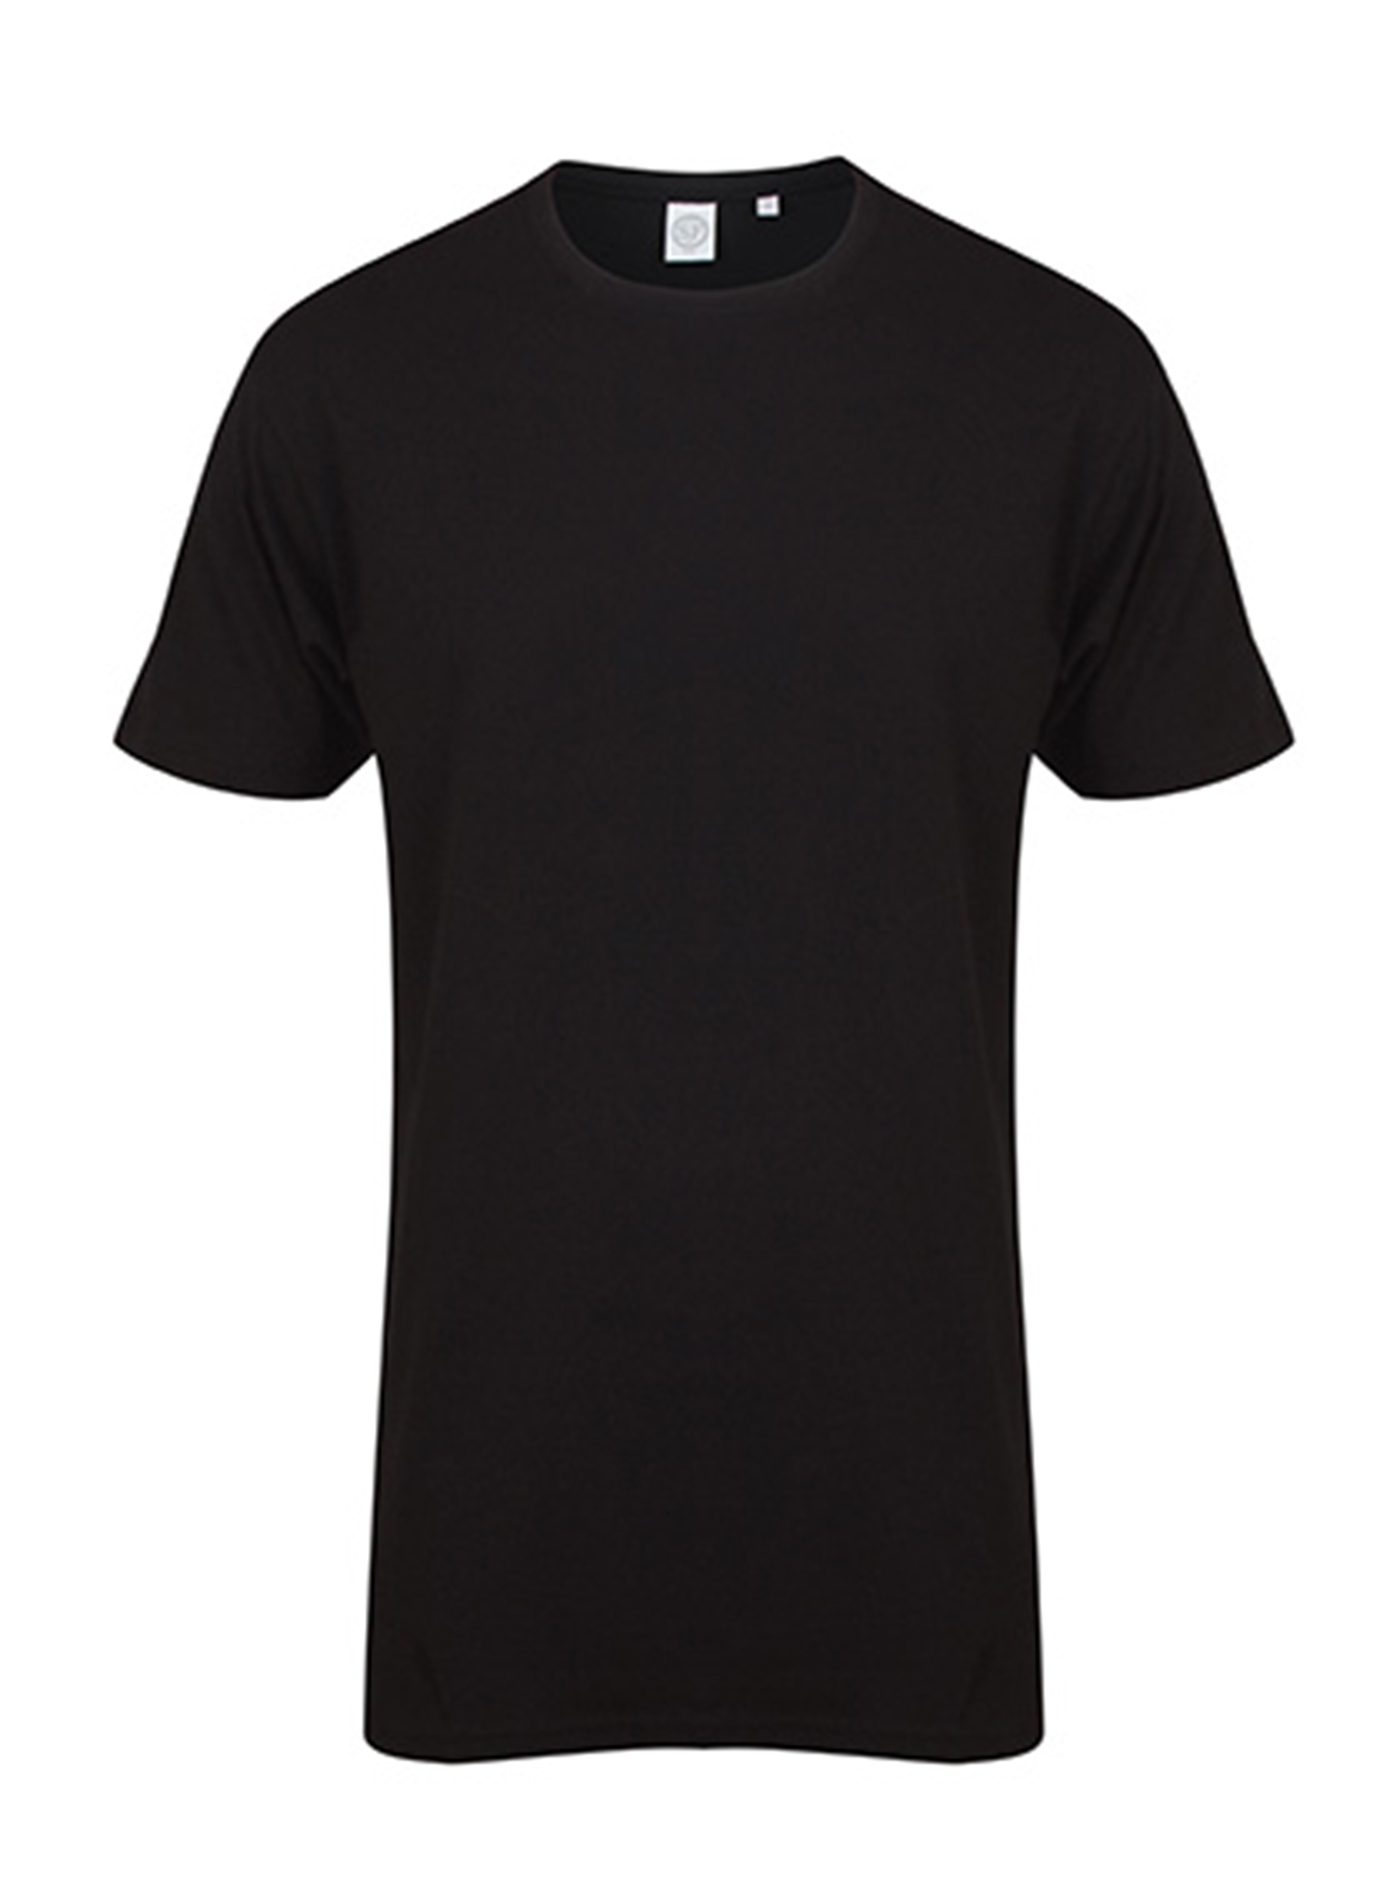 Pánské tričko s prodlouženým zadním dílem Skinnifit Longline T - černá XXL